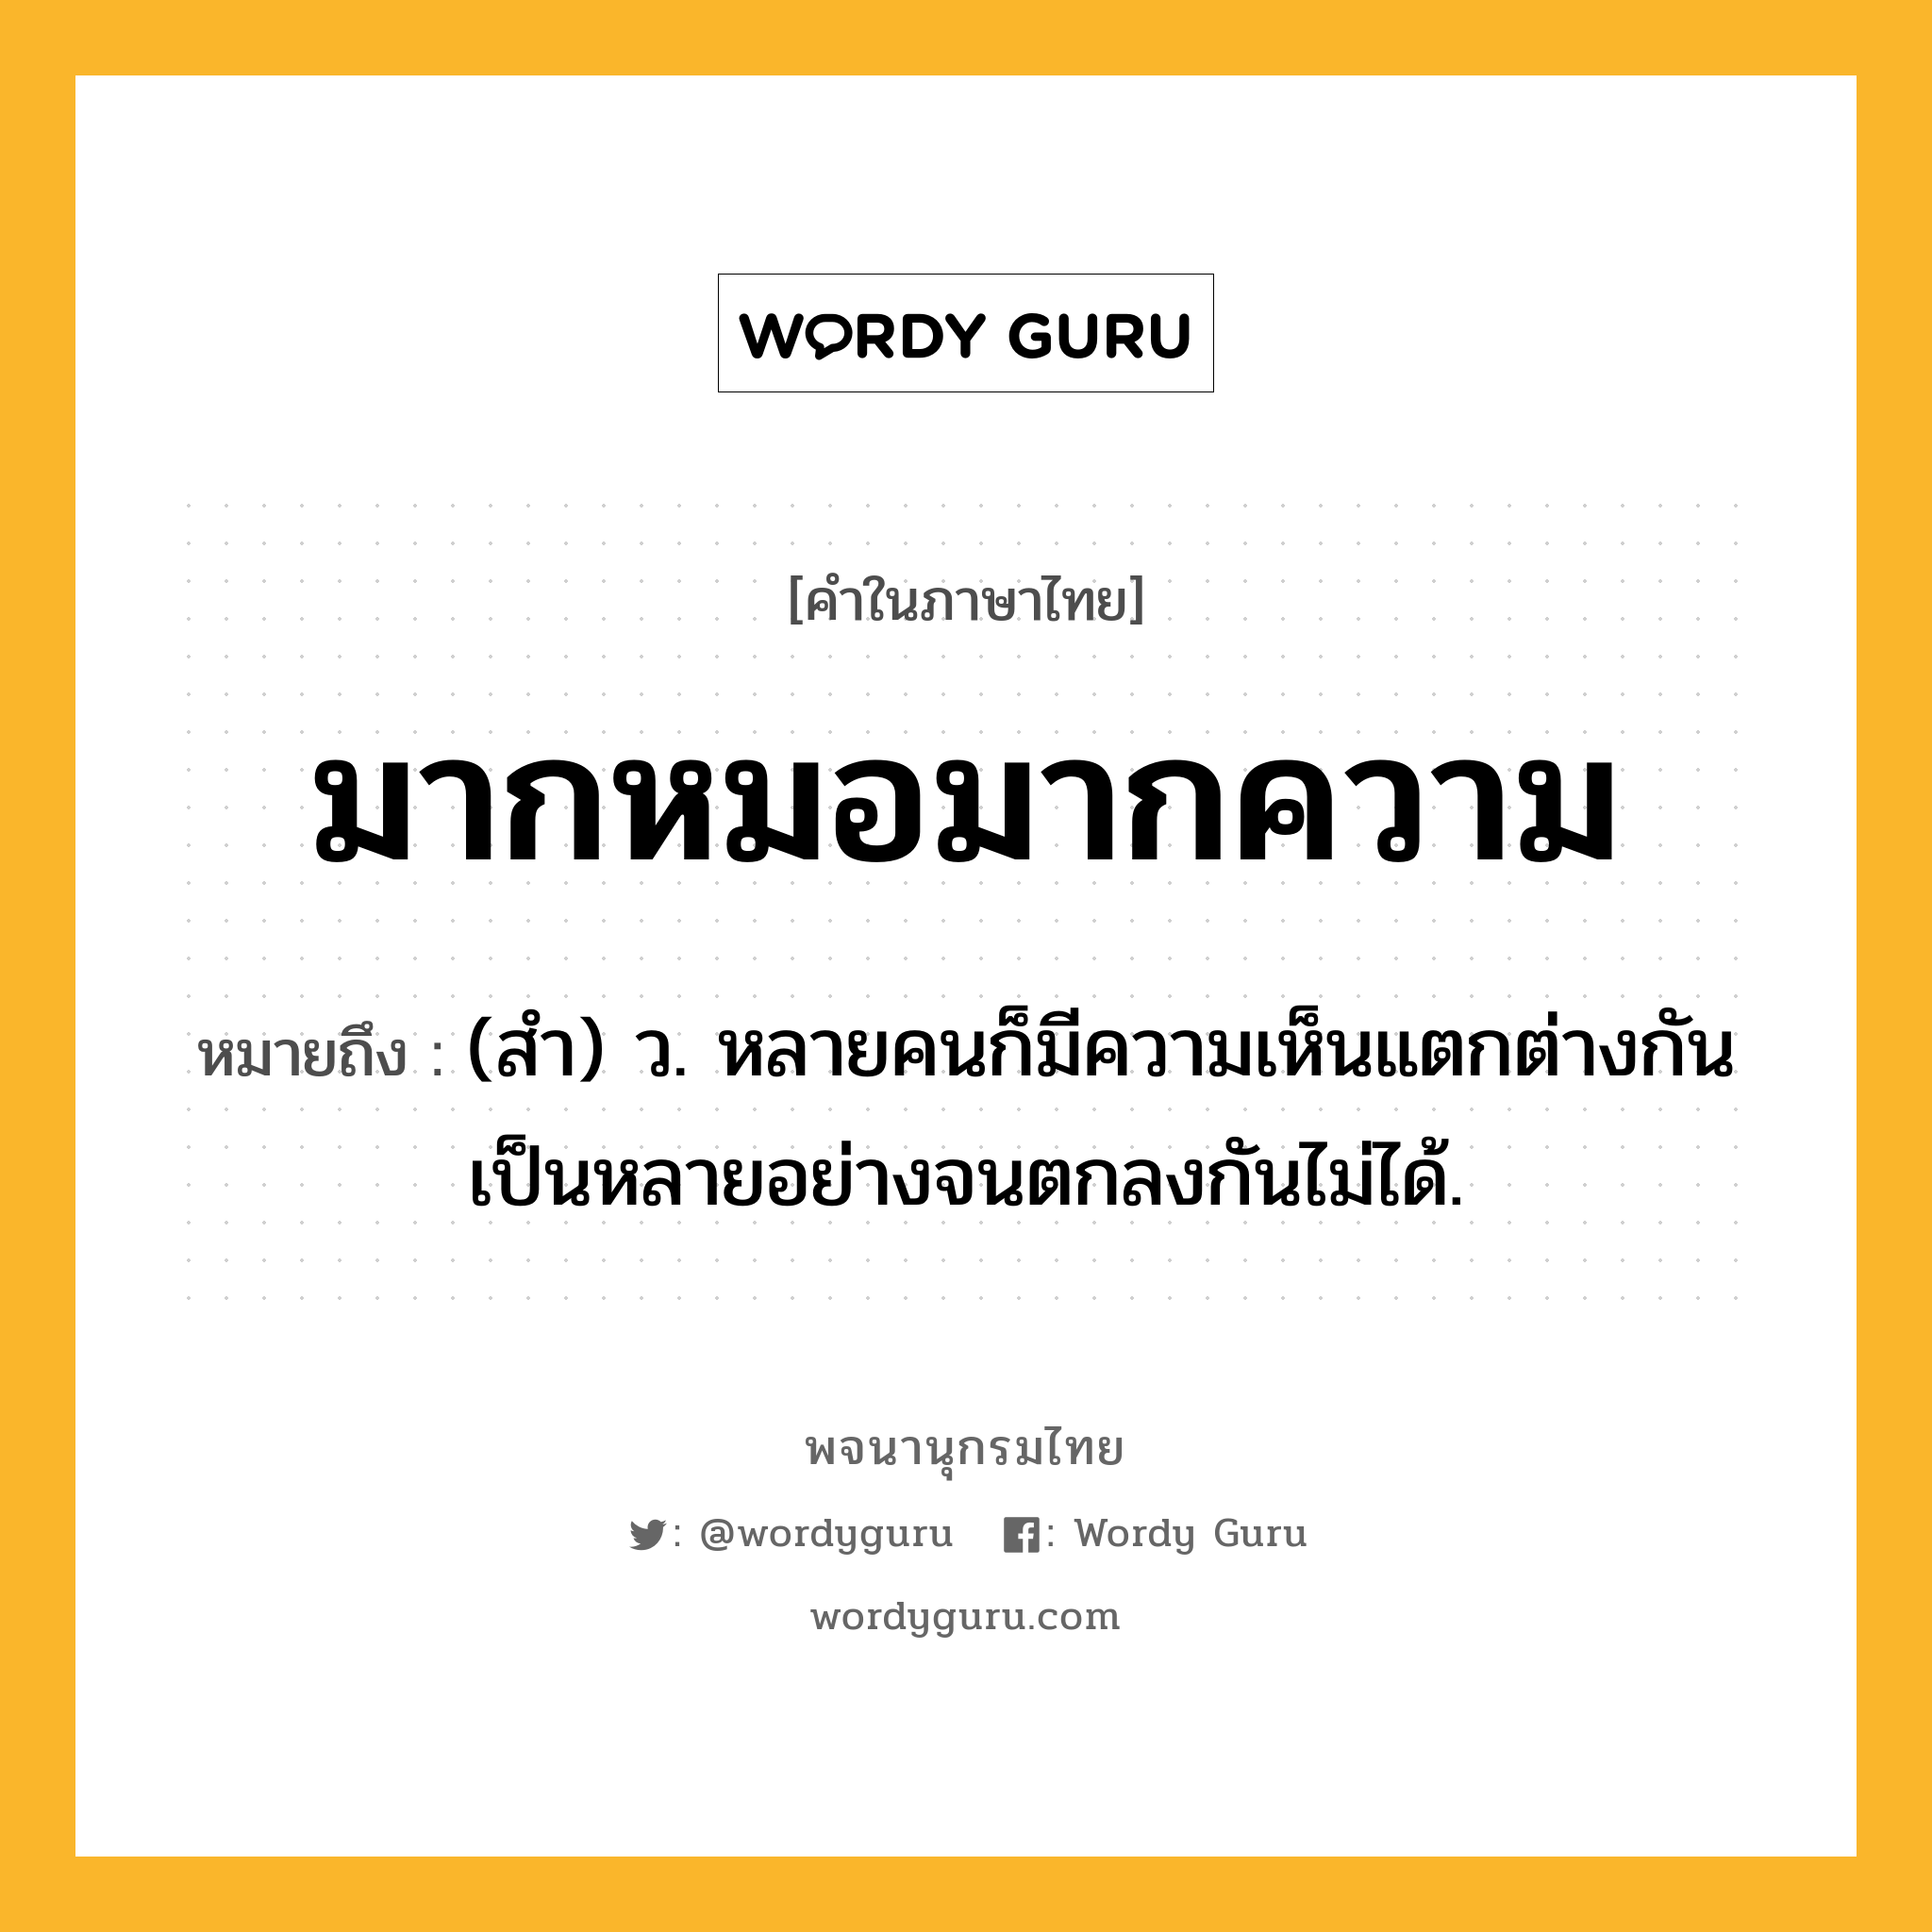 มากหมอมากความ ความหมาย หมายถึงอะไร?, คำในภาษาไทย มากหมอมากความ หมายถึง (สํา) ว. หลายคนก็มีความเห็นแตกต่างกันเป็นหลายอย่างจนตกลงกันไม่ได้.